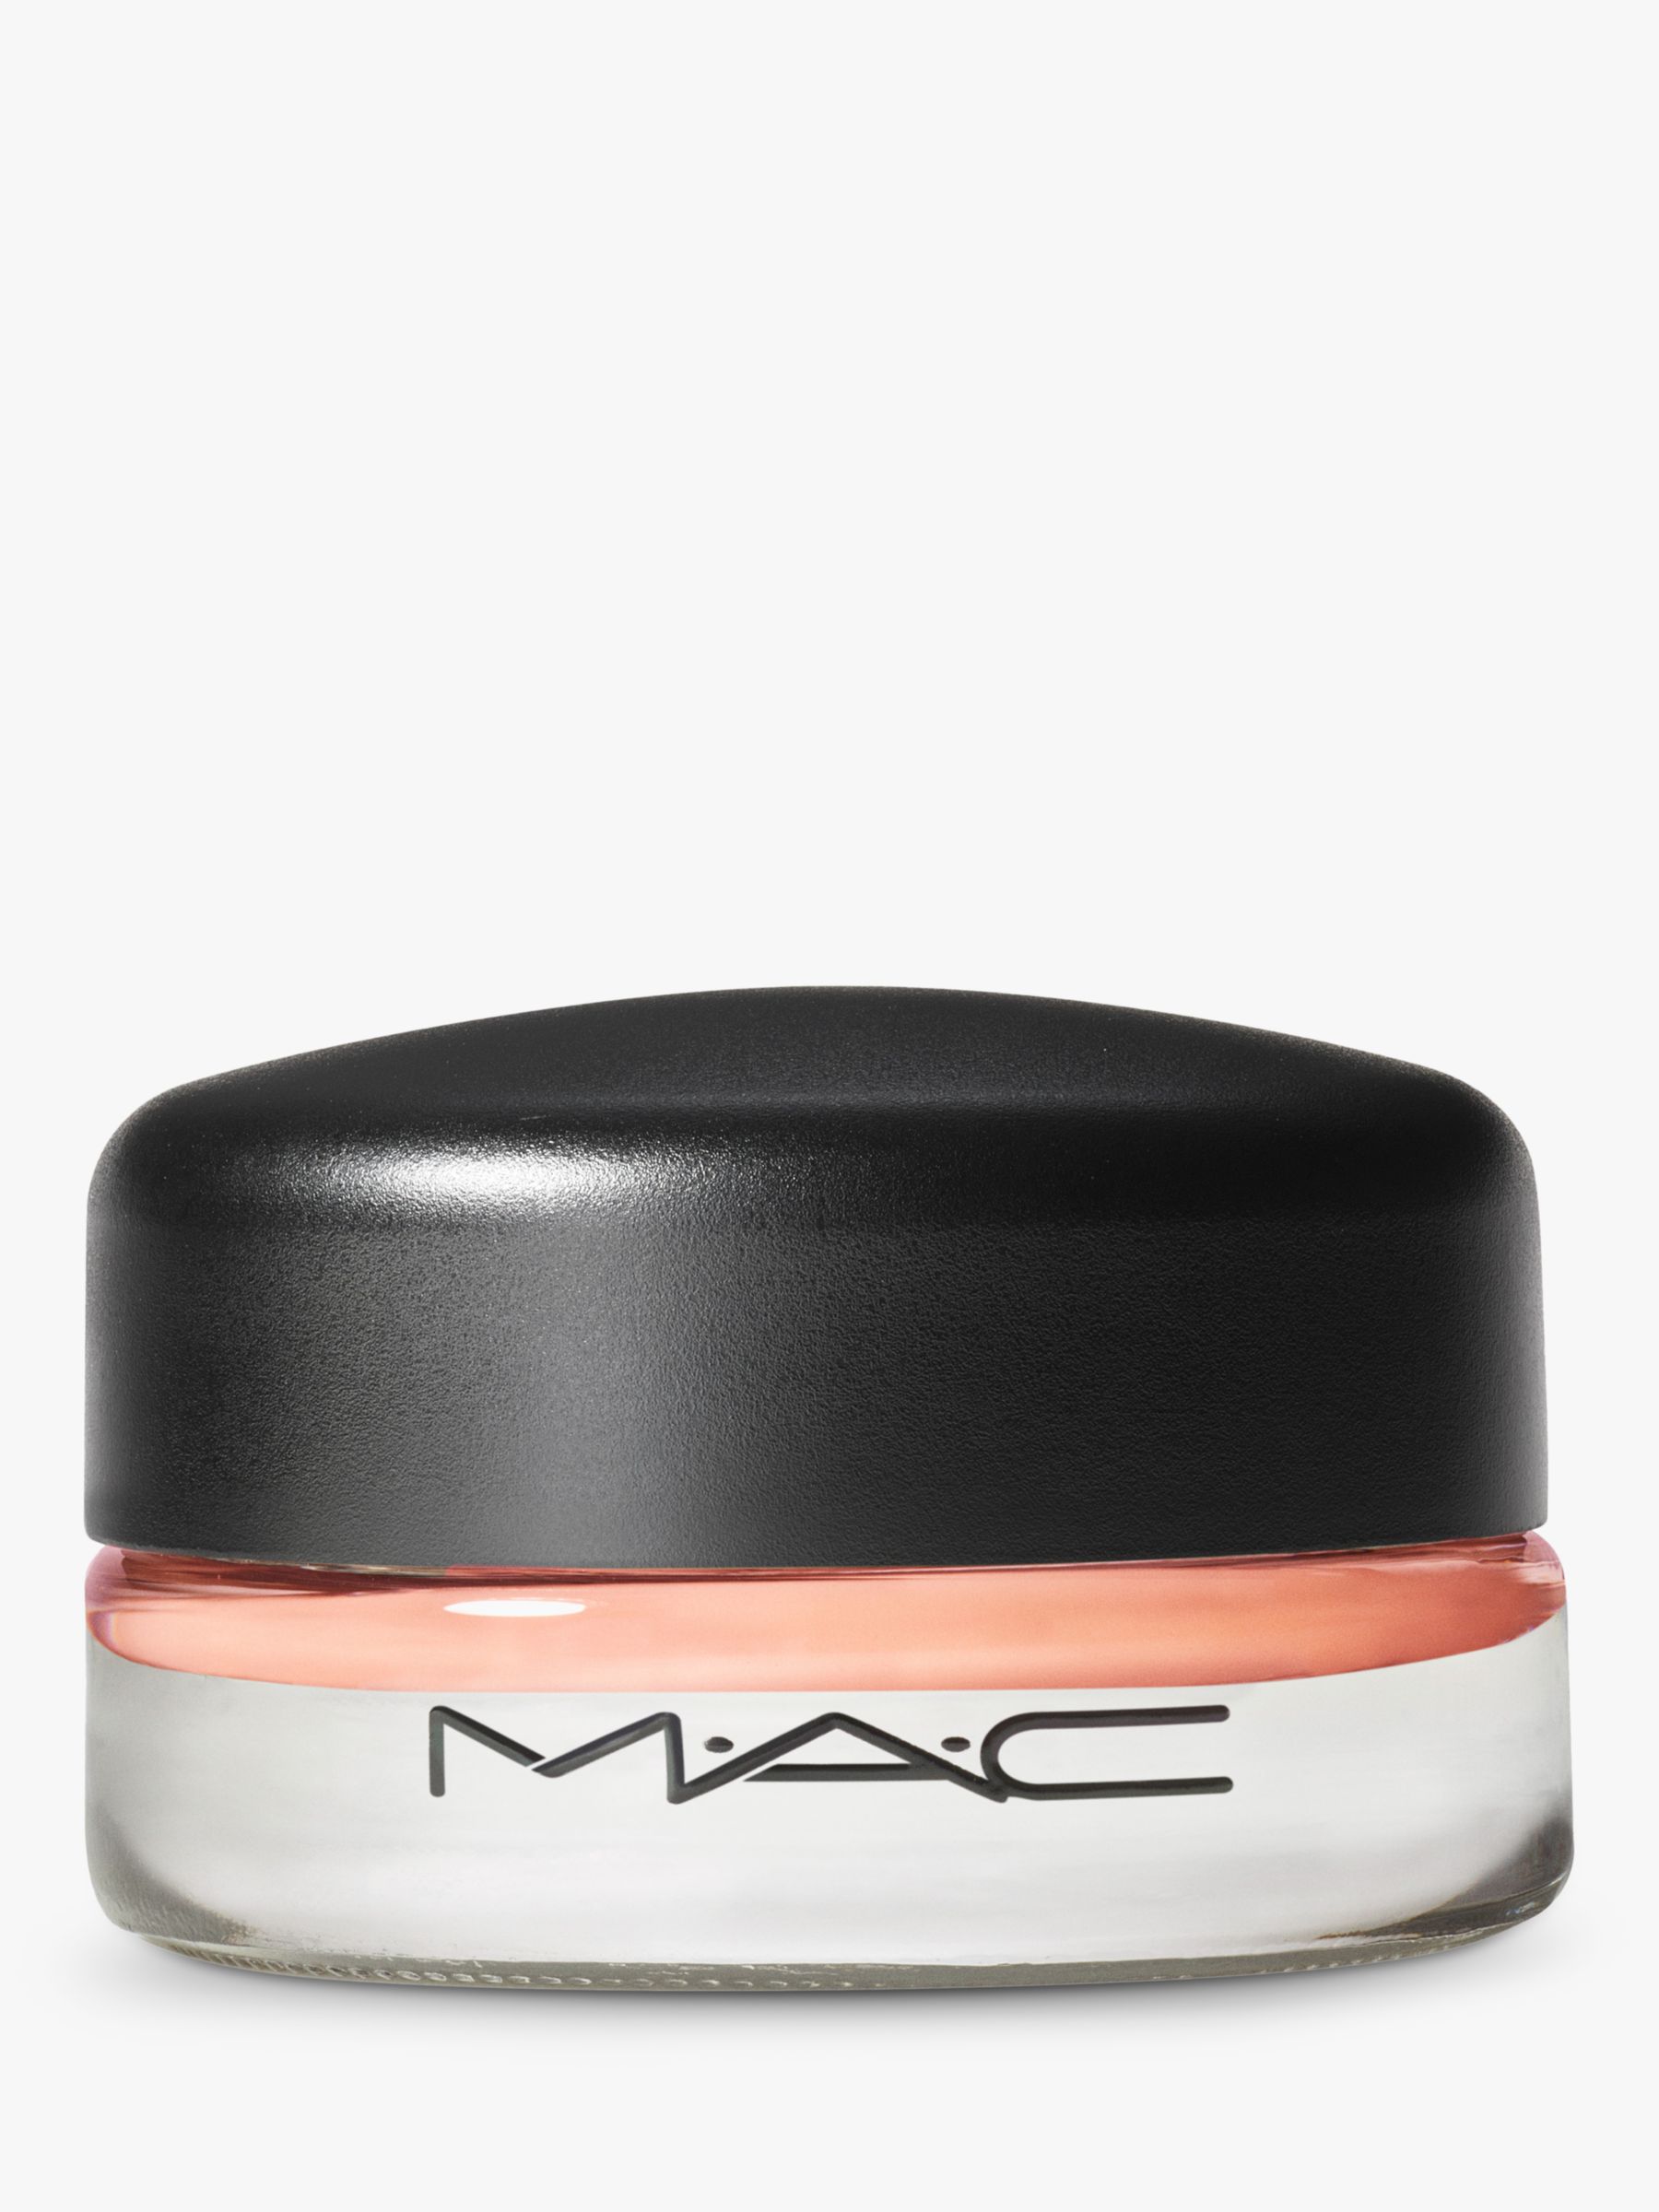 MAC Pro Longwear Paint Pot - Eyes